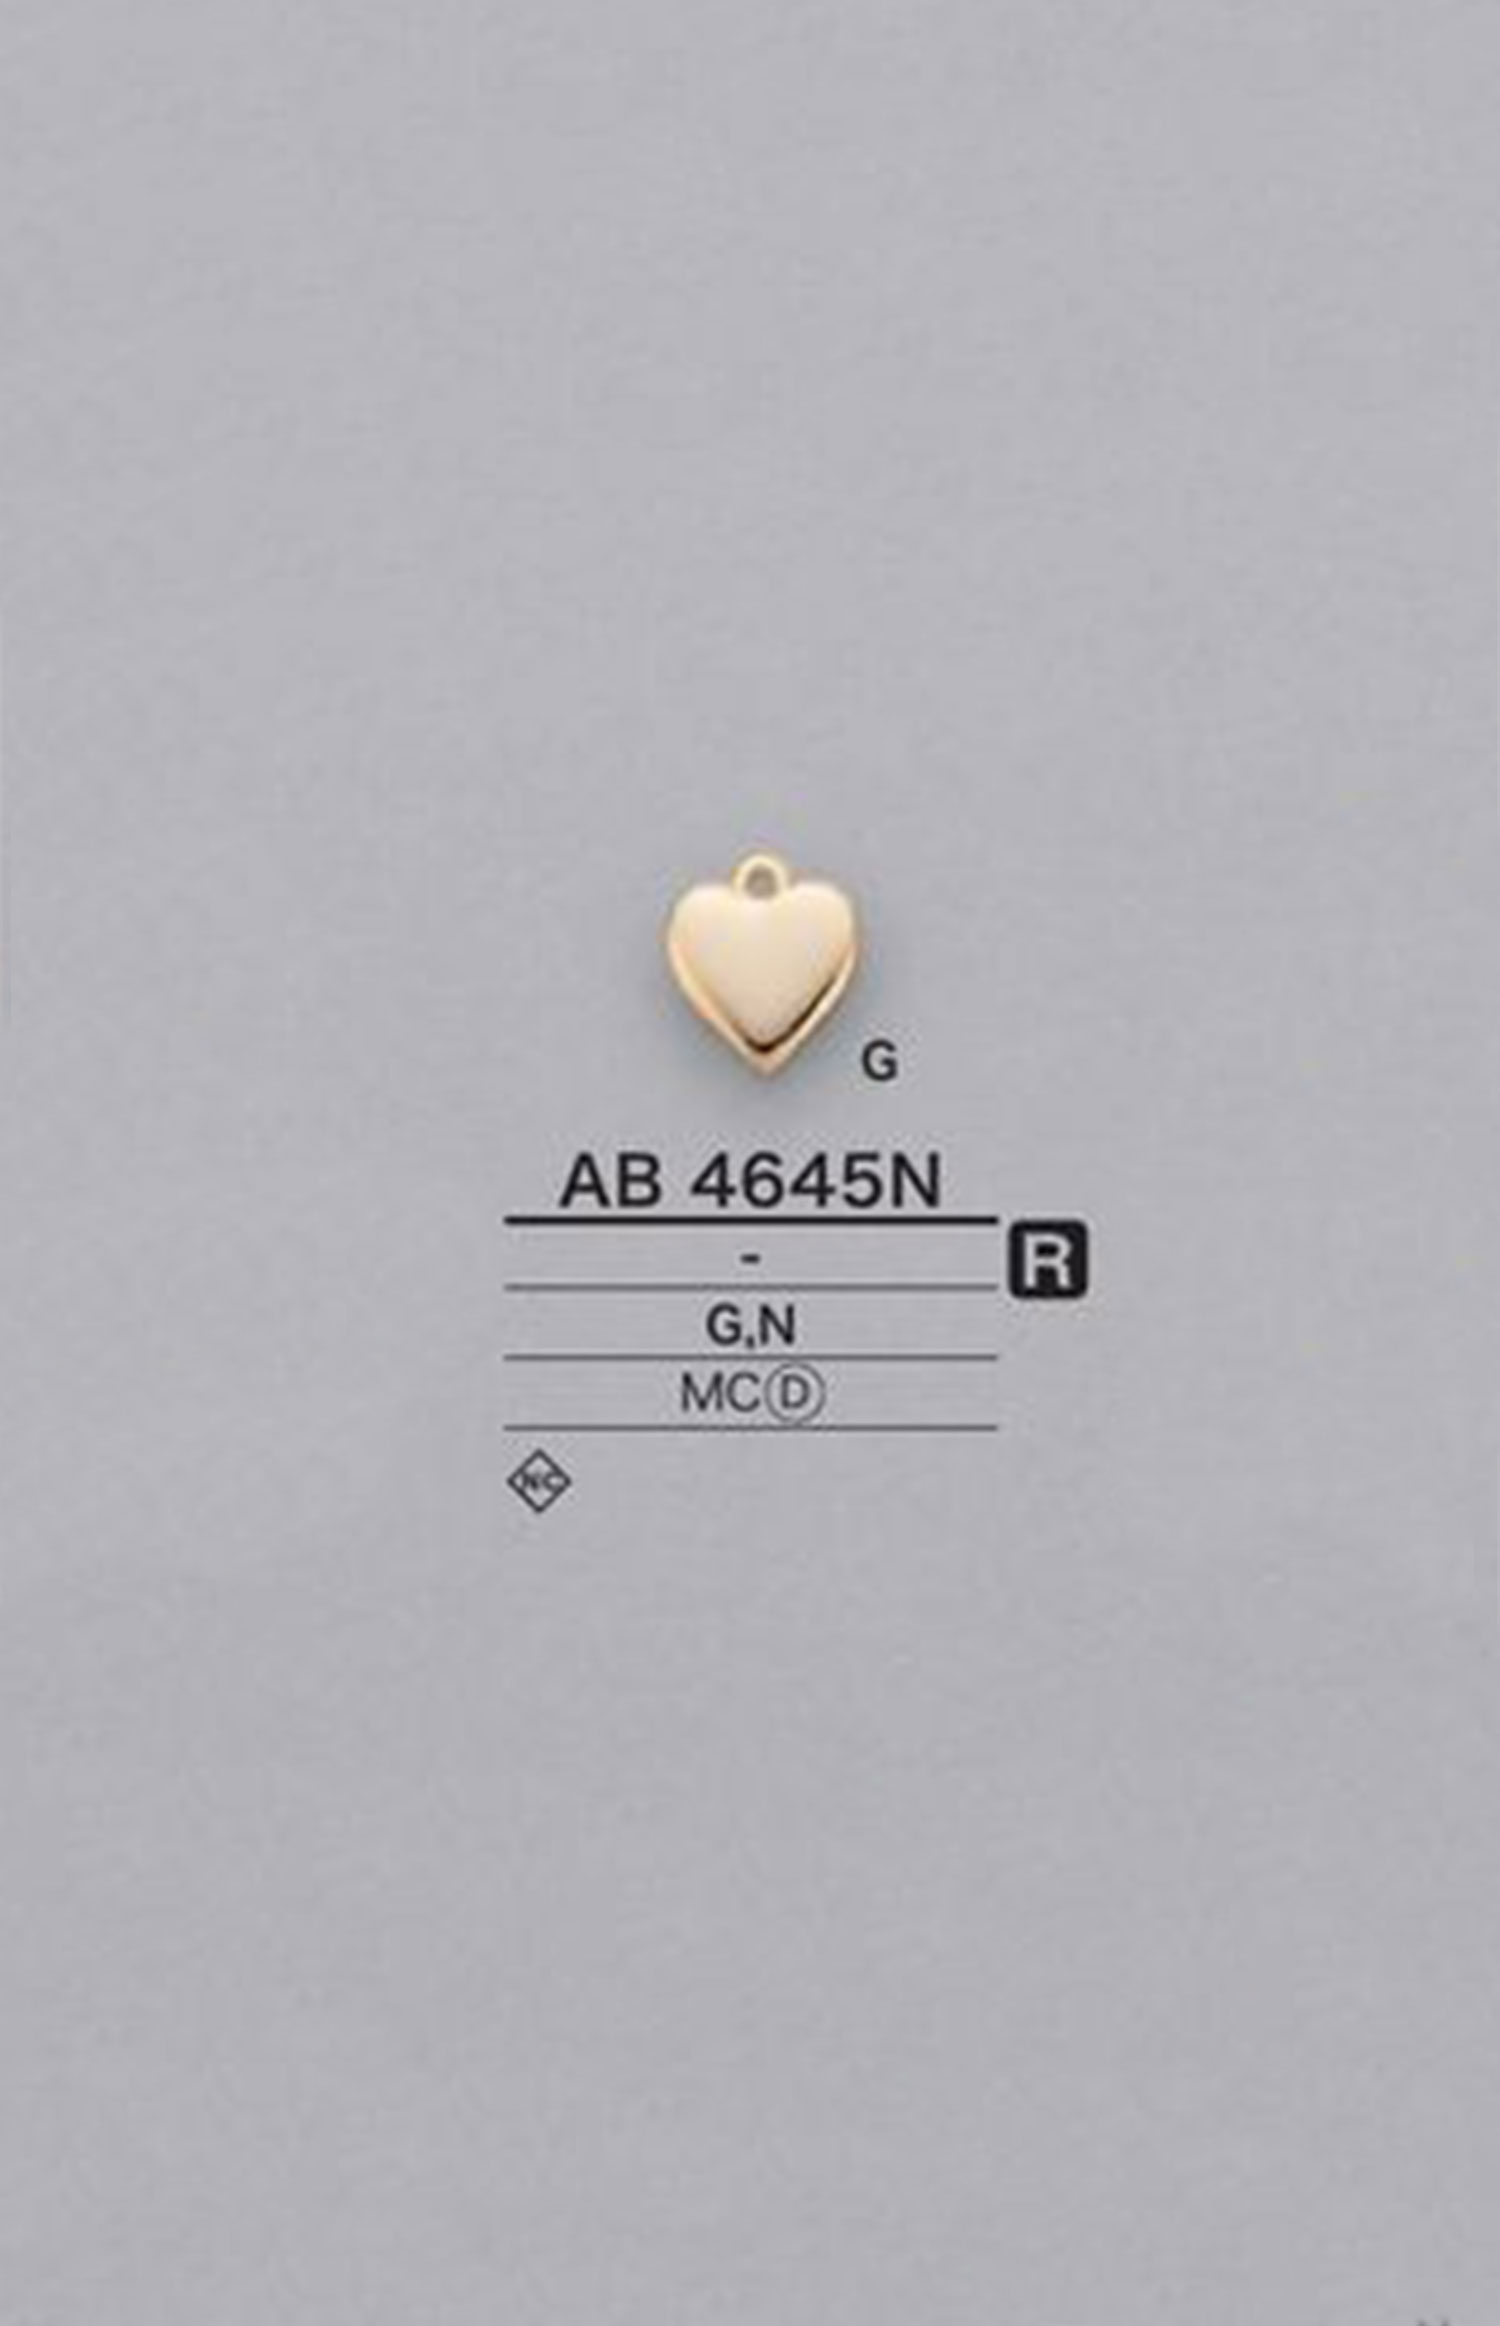 AB4645N Motivos Em Forma De Coração[Produtos Diversos E Outros] IRIS